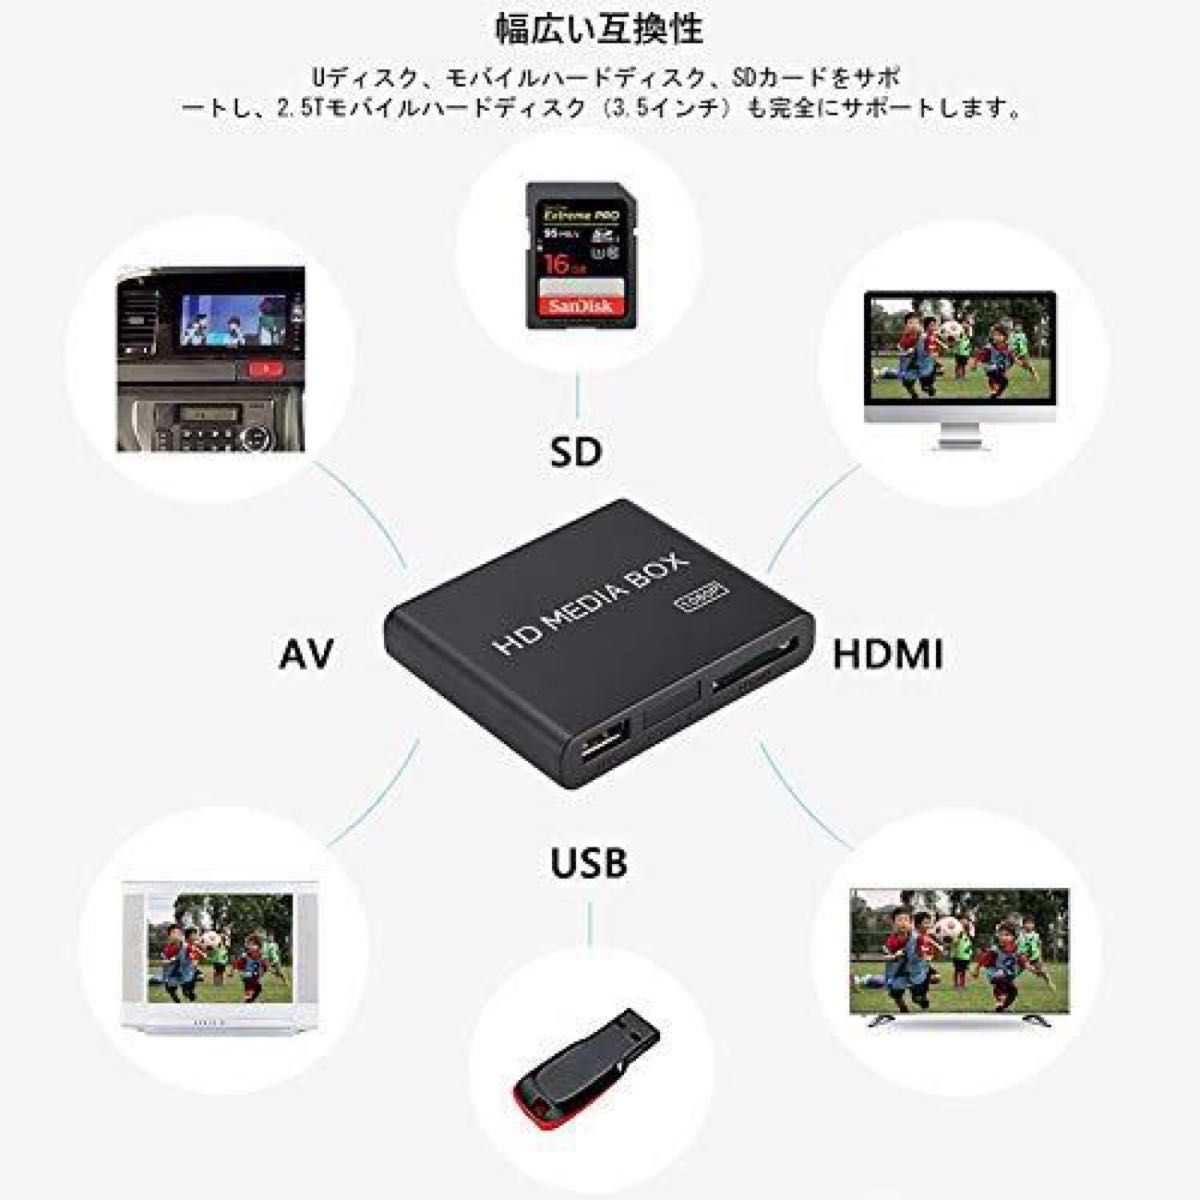 【未開封未使用品】メディアプレーヤー HD MEDIA BOX 高画質再生 マルチ出力 フルHD 1080P 対応